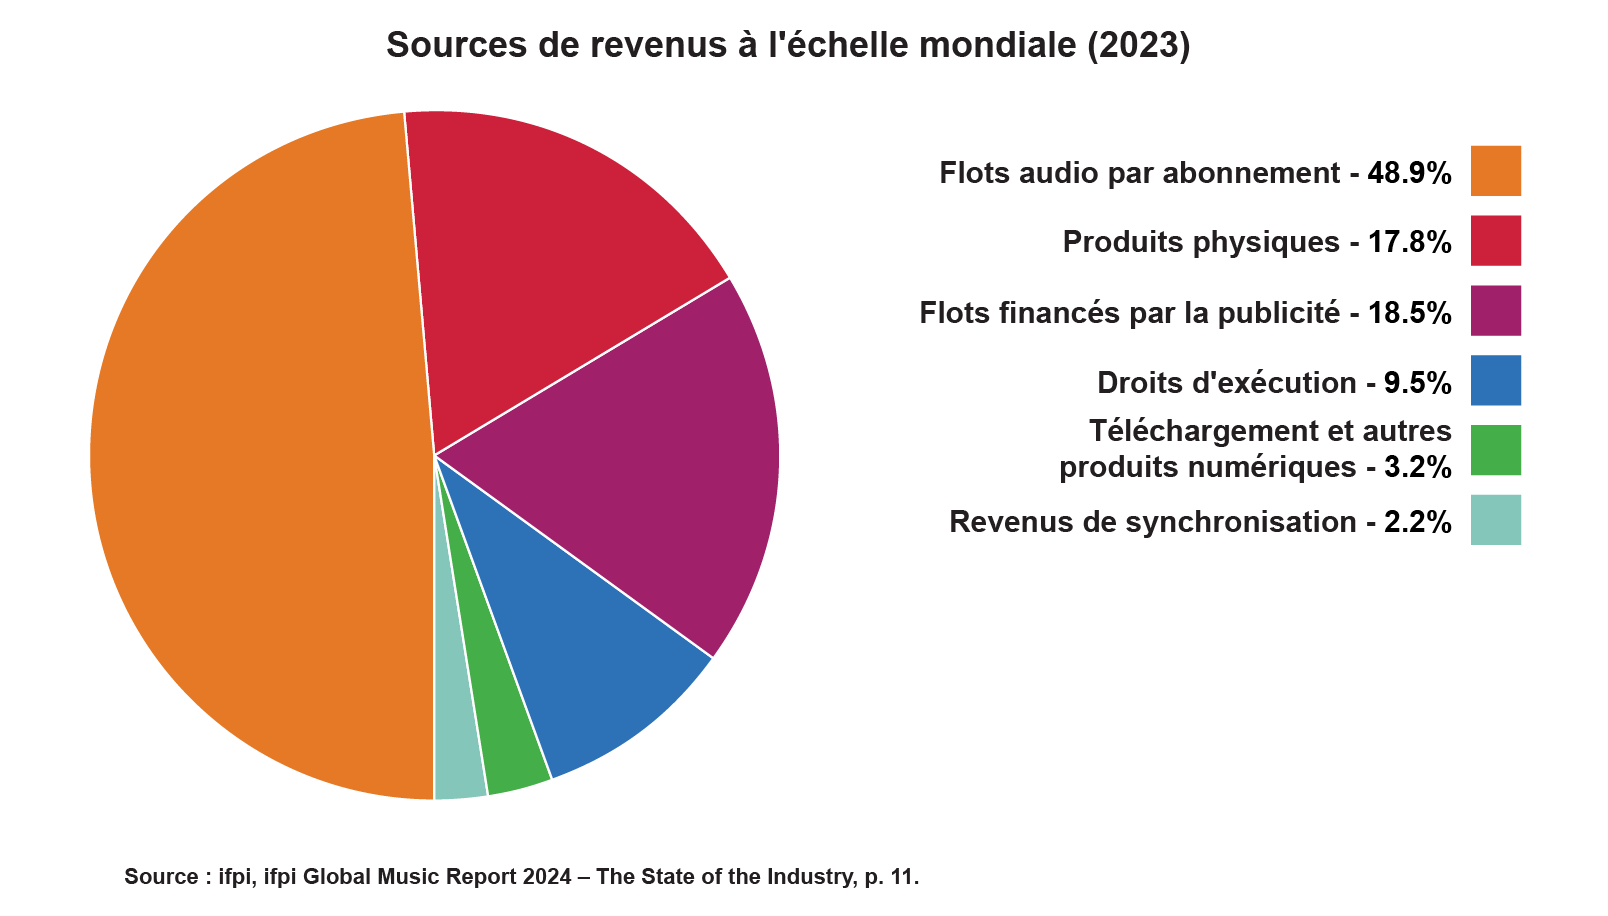 Diagramme à secteurs décrivant les sources de revenus de l’industrie musicale mondiale en 2022. Le pourcentage le plus élevé est constitué par les flots audio par abonnement (48,3 %), suivis par les flots financés par la publicité (18,7 %), les disques physiques (17,5 %), les droits d’exécution (9,4 %), les téléchargements et autres produits numériques (3,6 %), et les revenus de synchronisation (2,4 %).